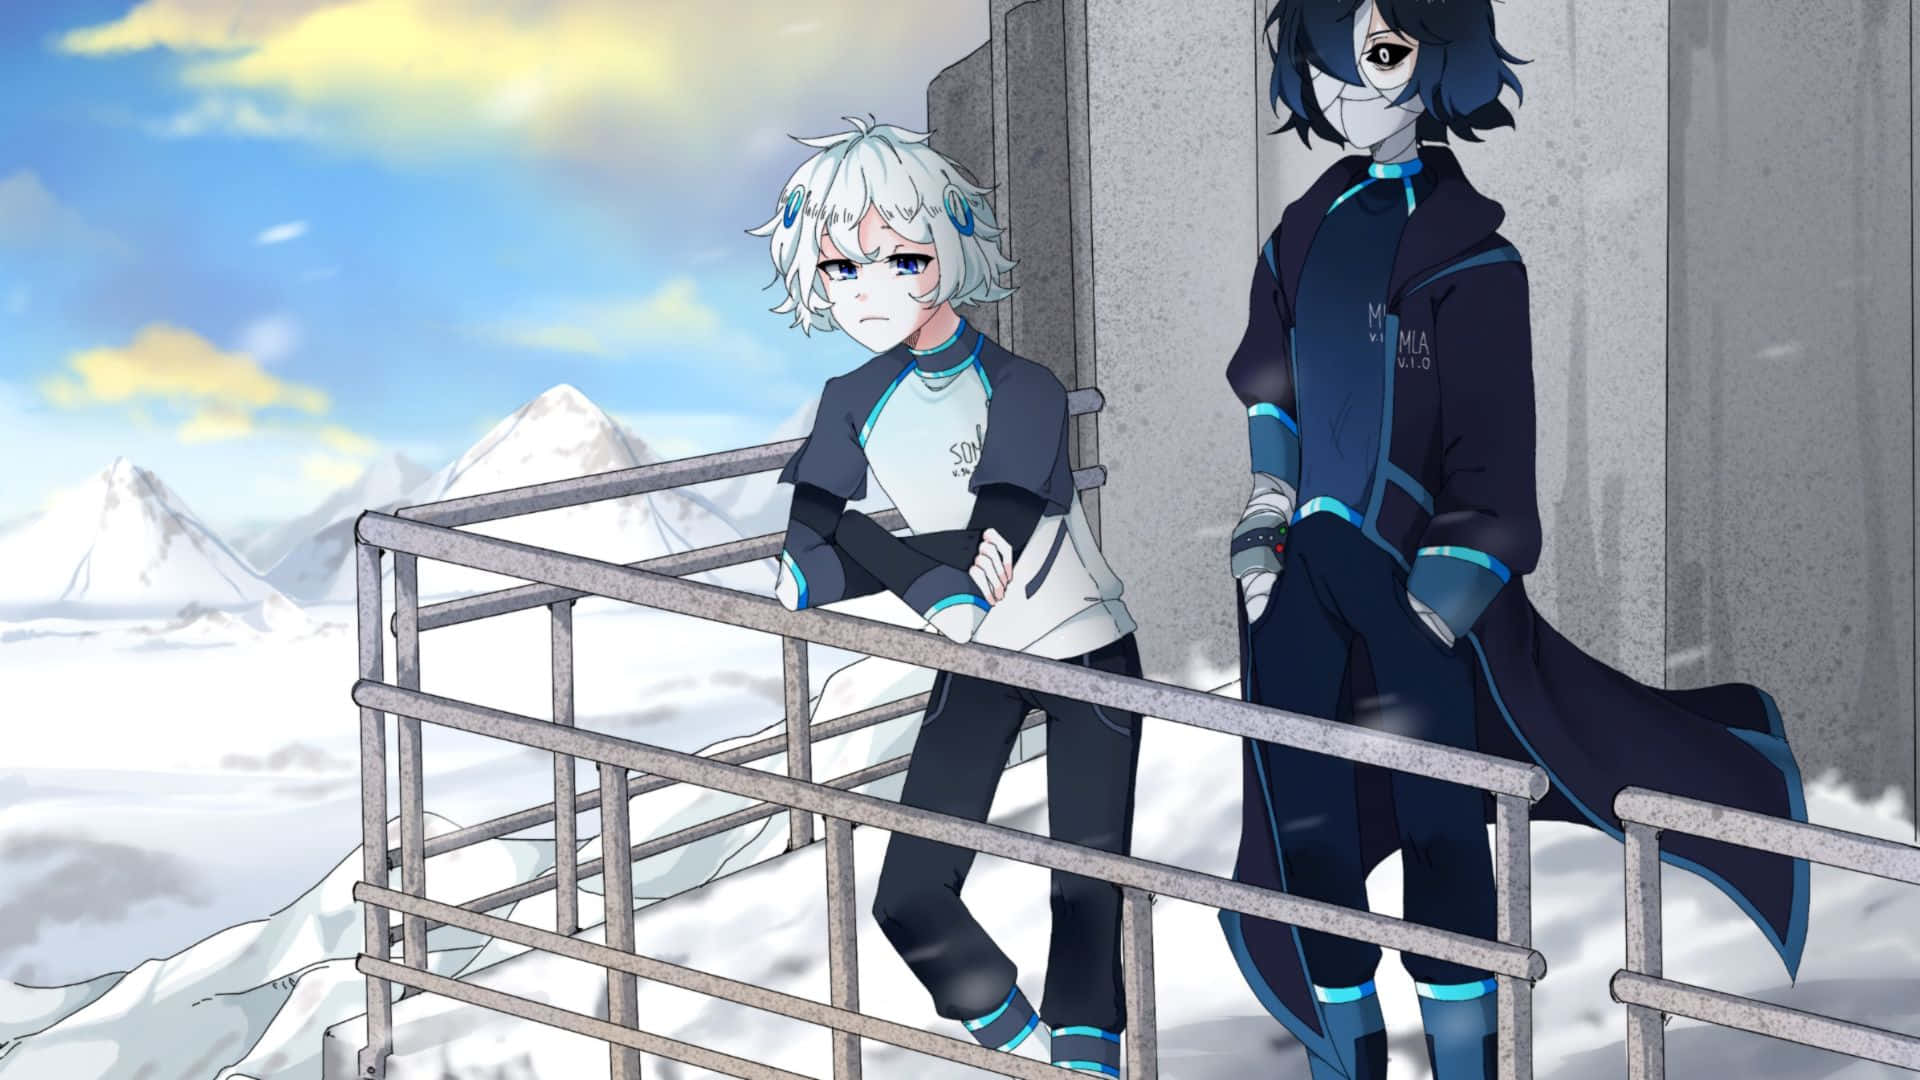 Dospersonajes De Anime Parados En Un Balcón En La Nieve.